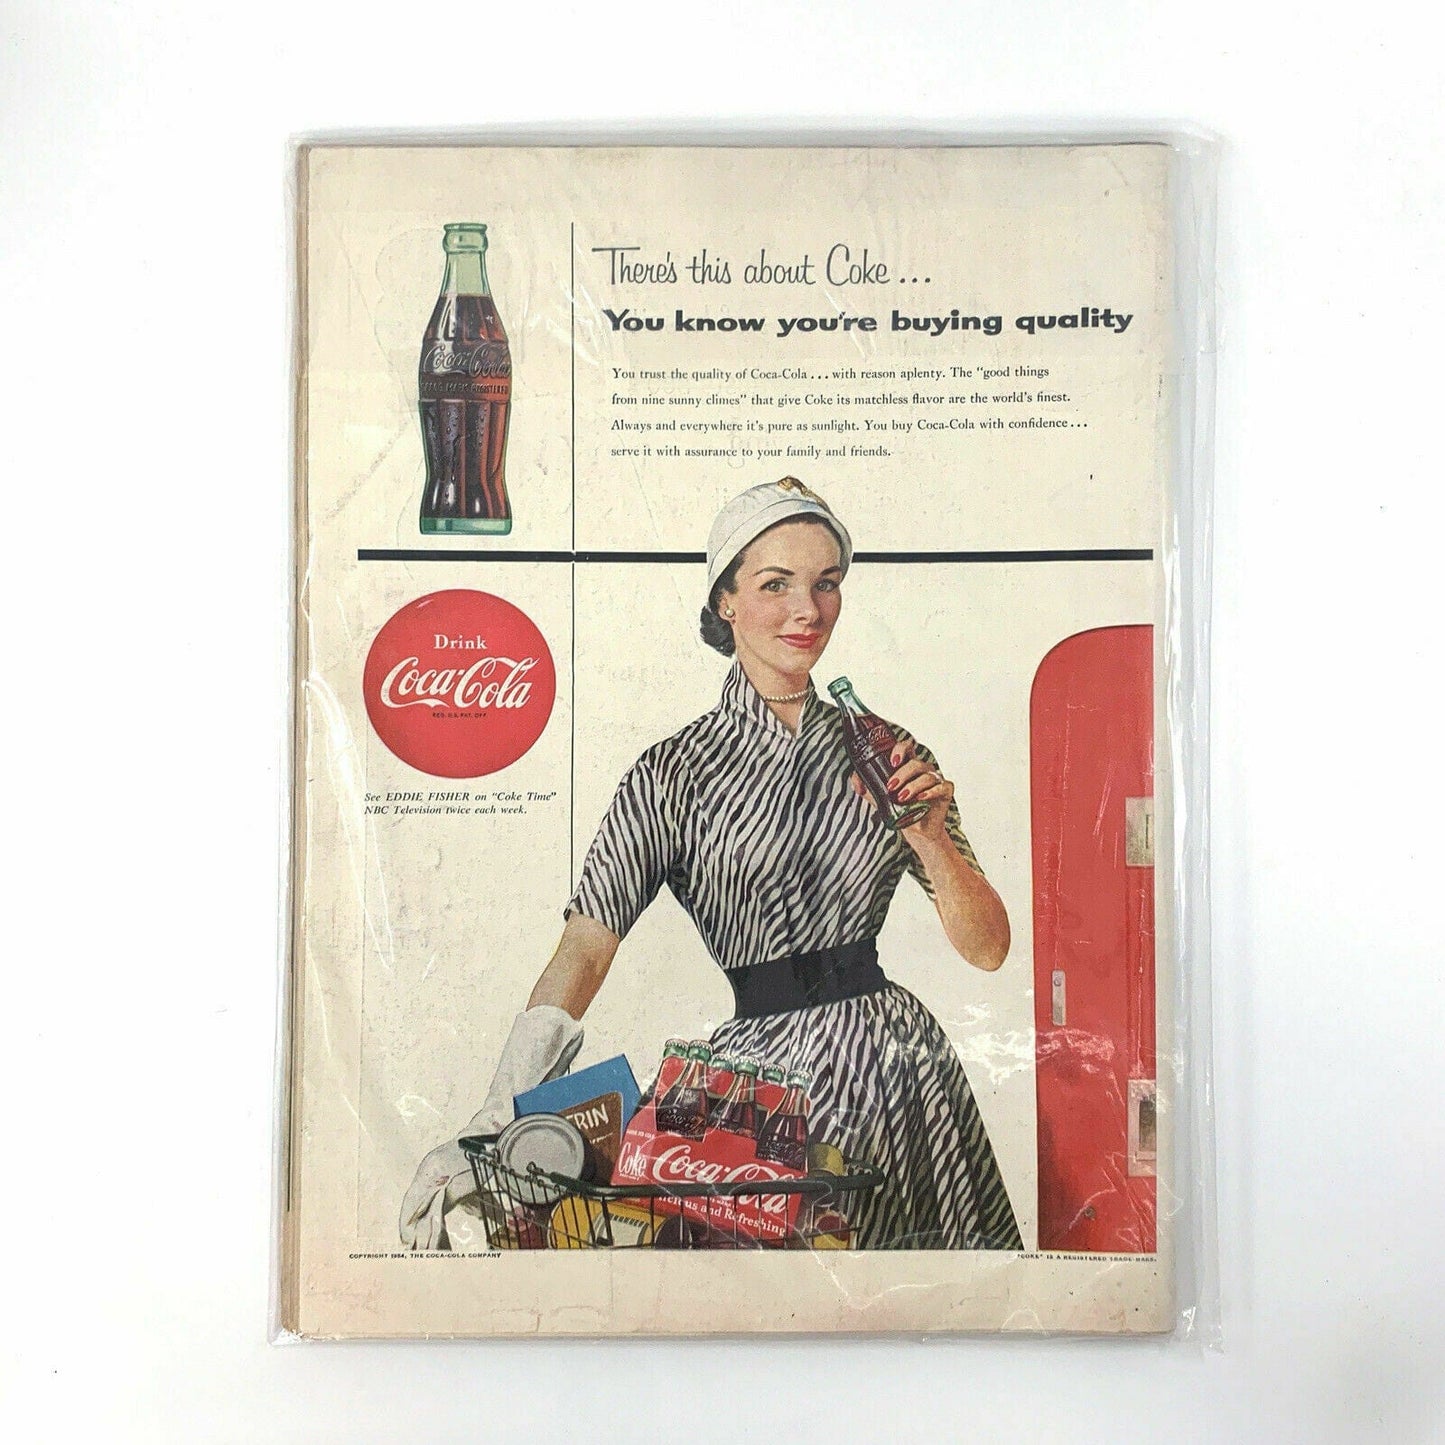 Vintage Life Magazine Full Size “Eva Marie Saint” - July 19, 1954